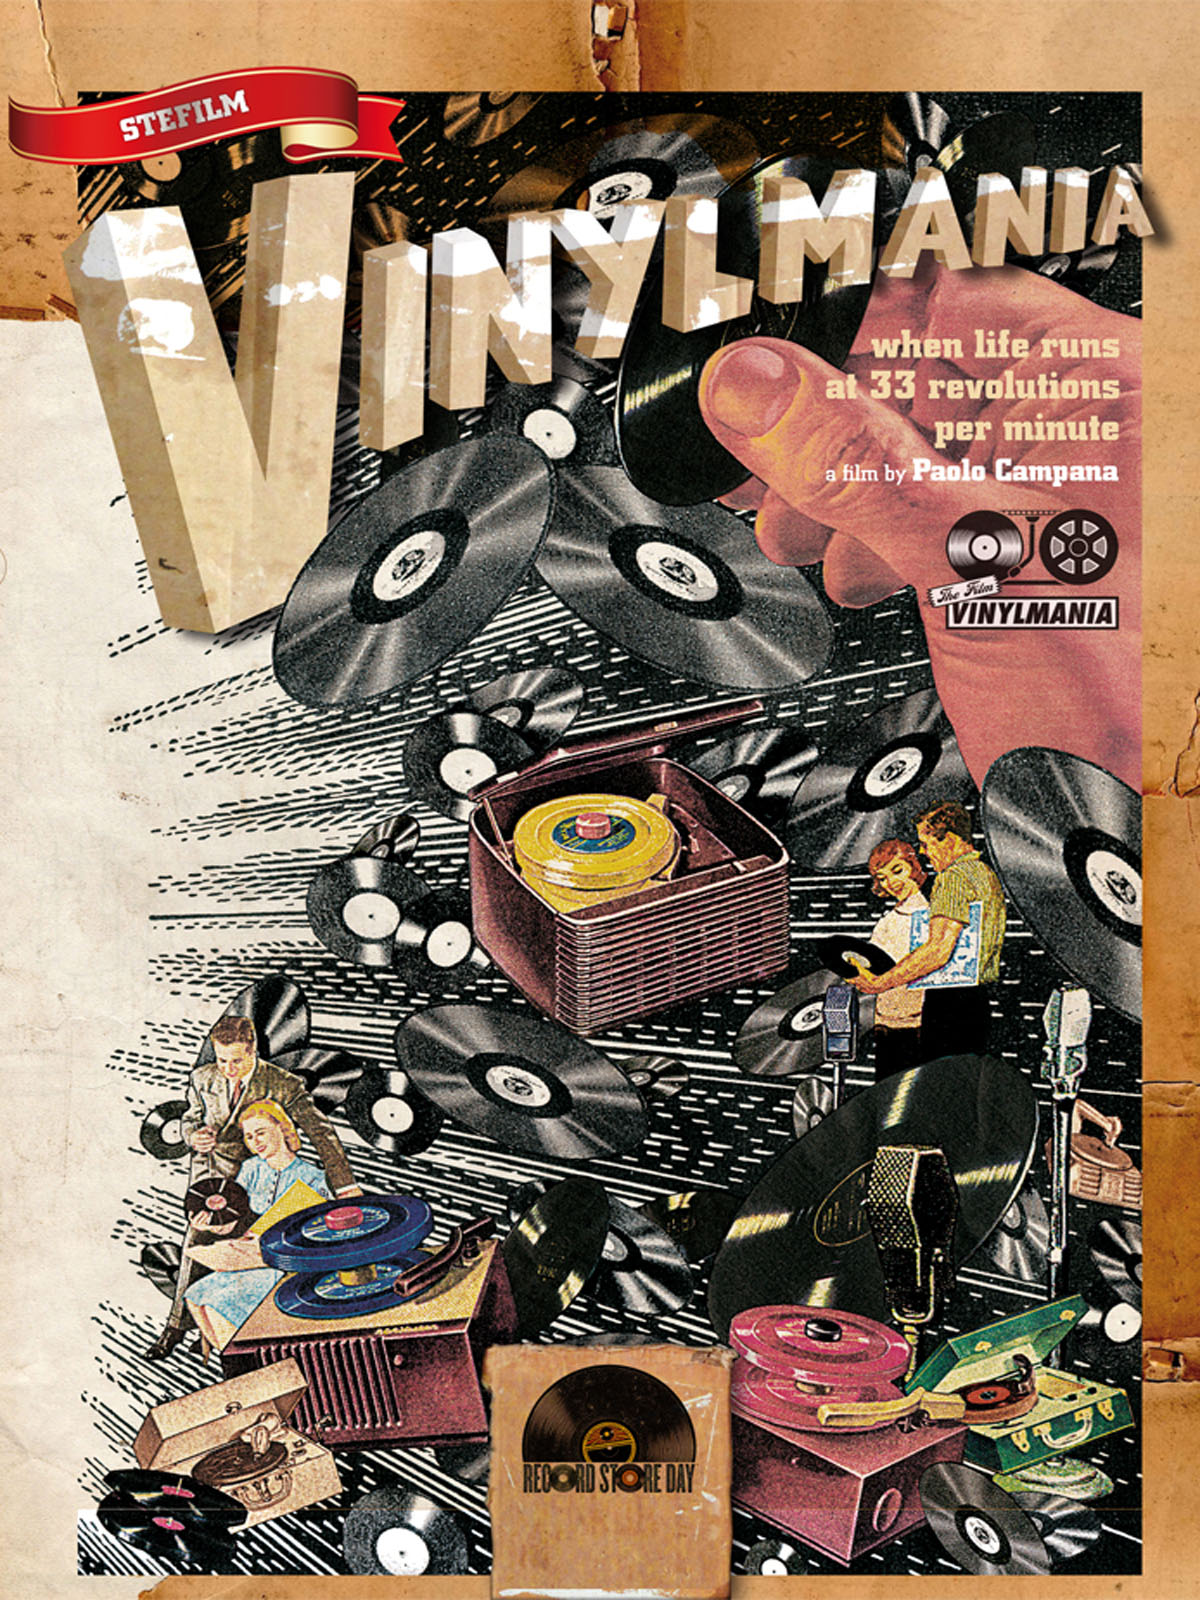 Vinylmania: When Life Runs at 33 Revolutions Per Minute (2012) Screenshot 2